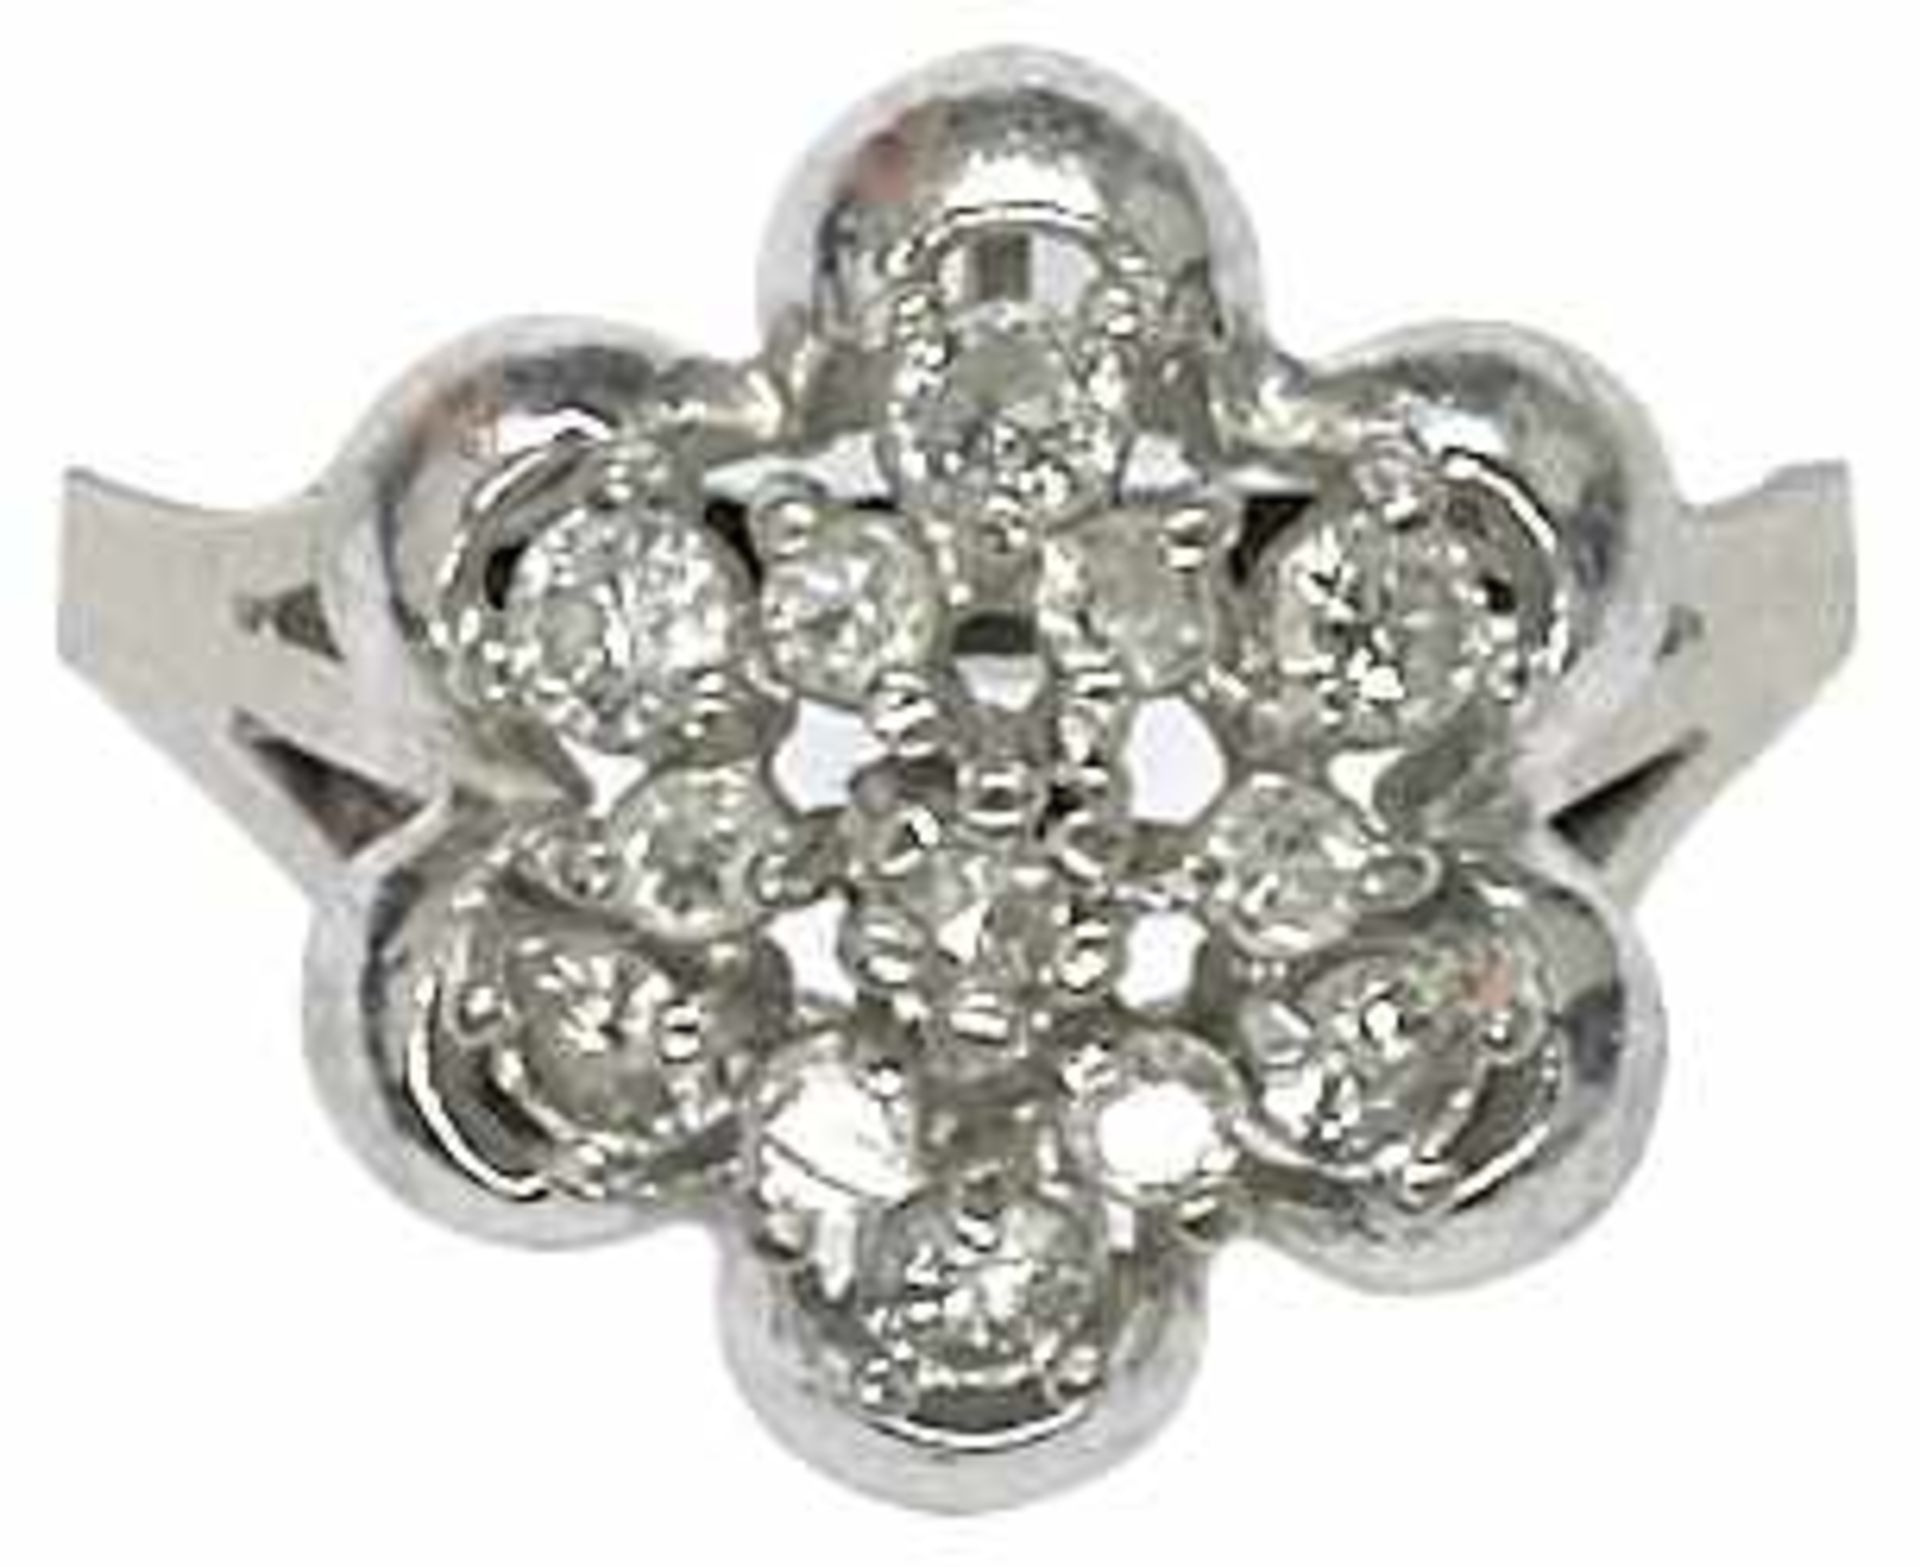 Ringe mit Steinbesatz Dekorativer Damenfingerring mit Ringkopf in Form einer Blüte, diese besetzt